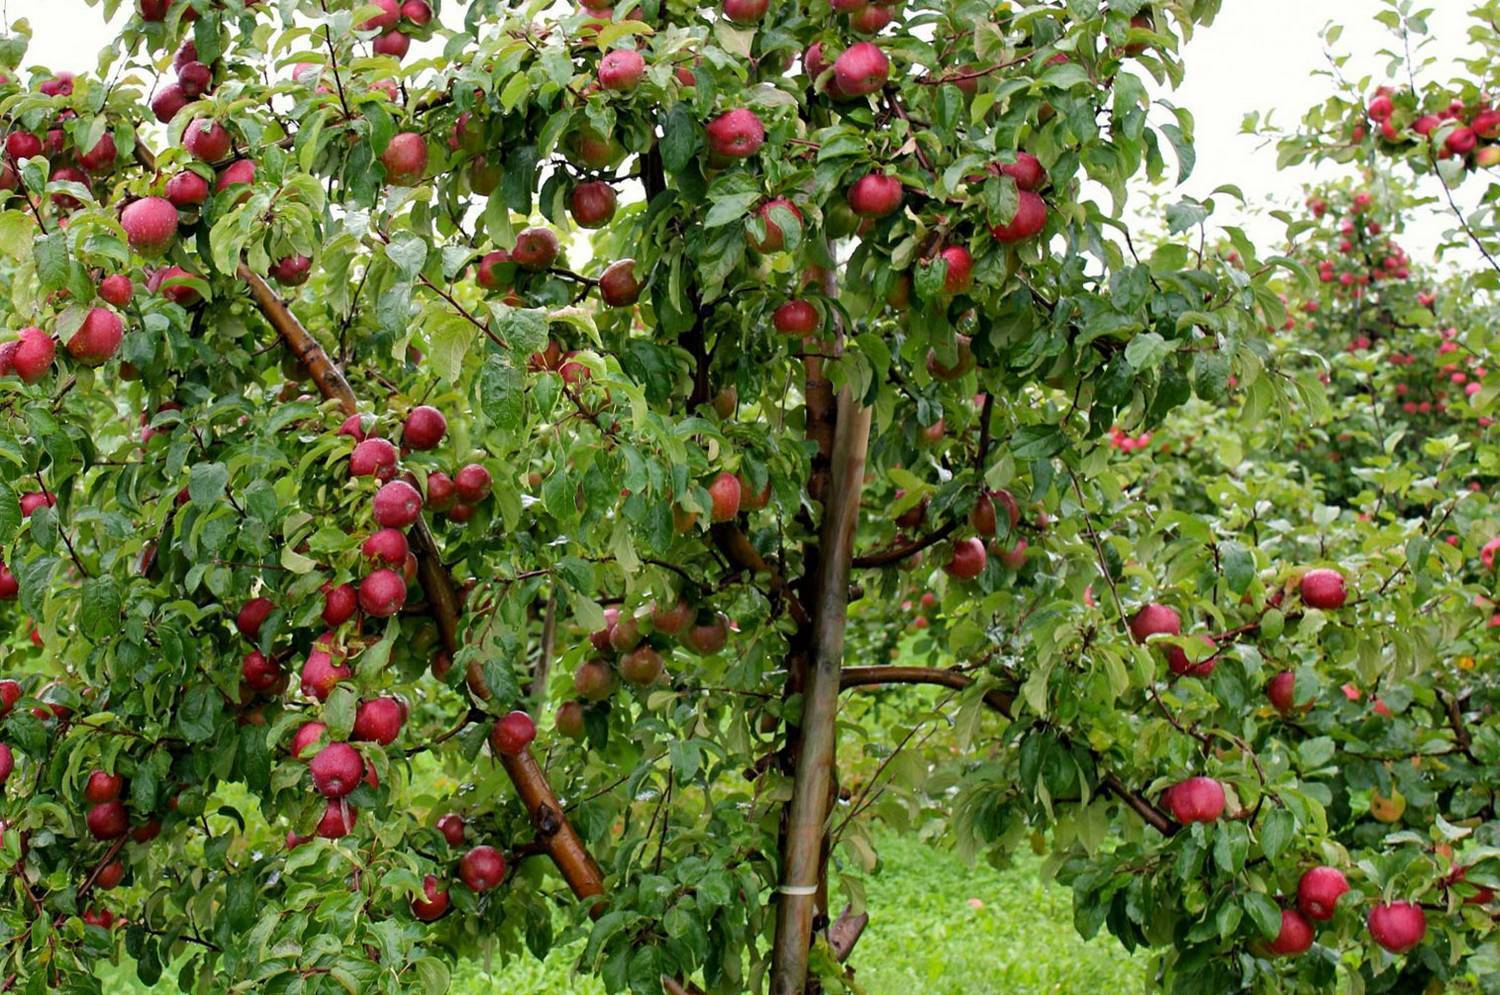 Описание сорта яблони легенда: фото яблок, важные характеристики, урожайность с дерева